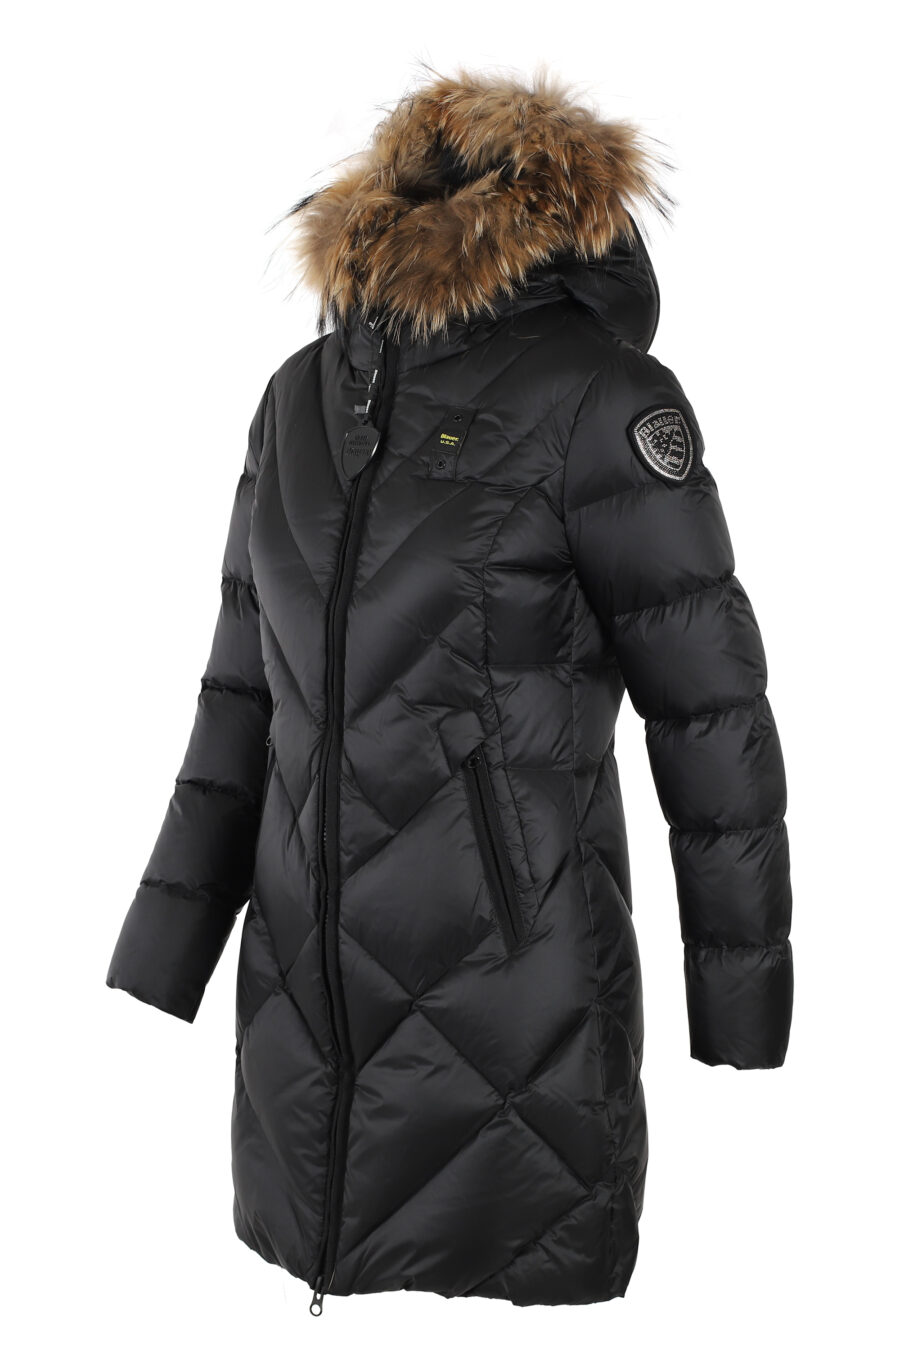 Longue veste noire avec capuche en fourrure et doublure marron - IMG 4990